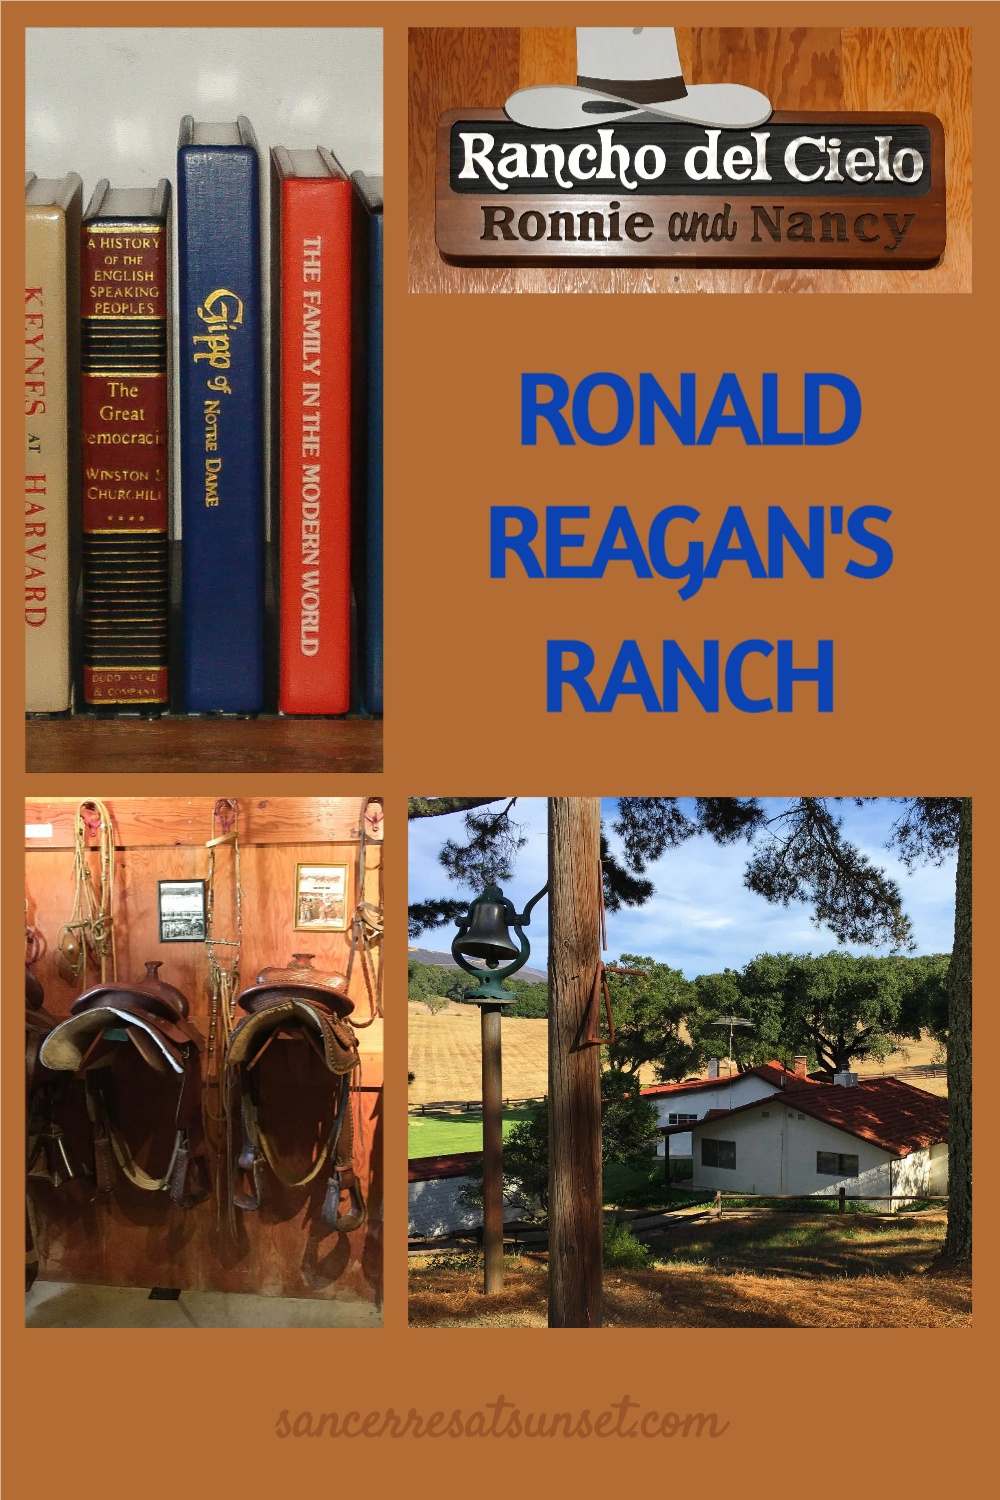 Rancho del Cielo -- enjoying a rare afternoon at the Reagan Ranch in California